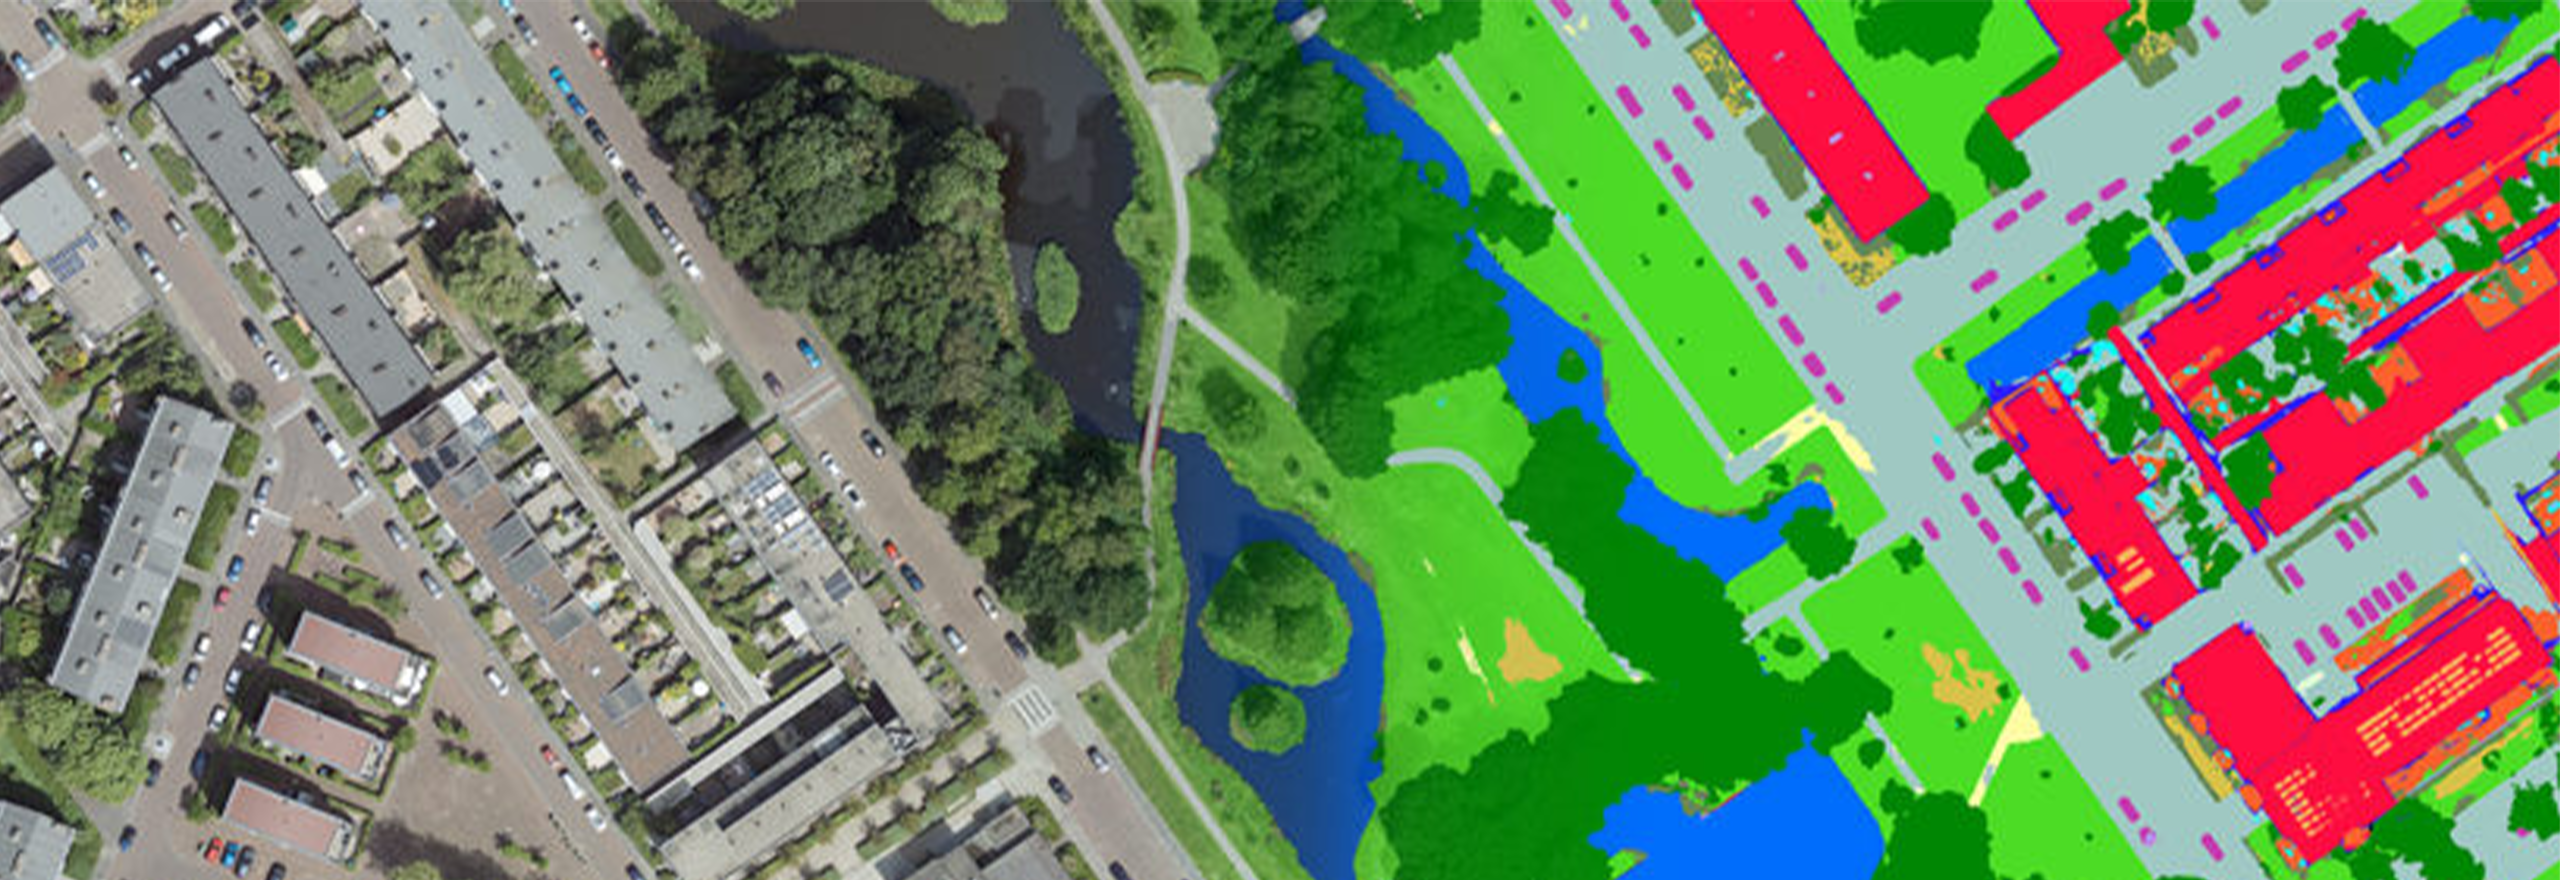 Imágenes aéreas superpuestas con el mapa de la cubierta terrestre de la inteligencia artificial 